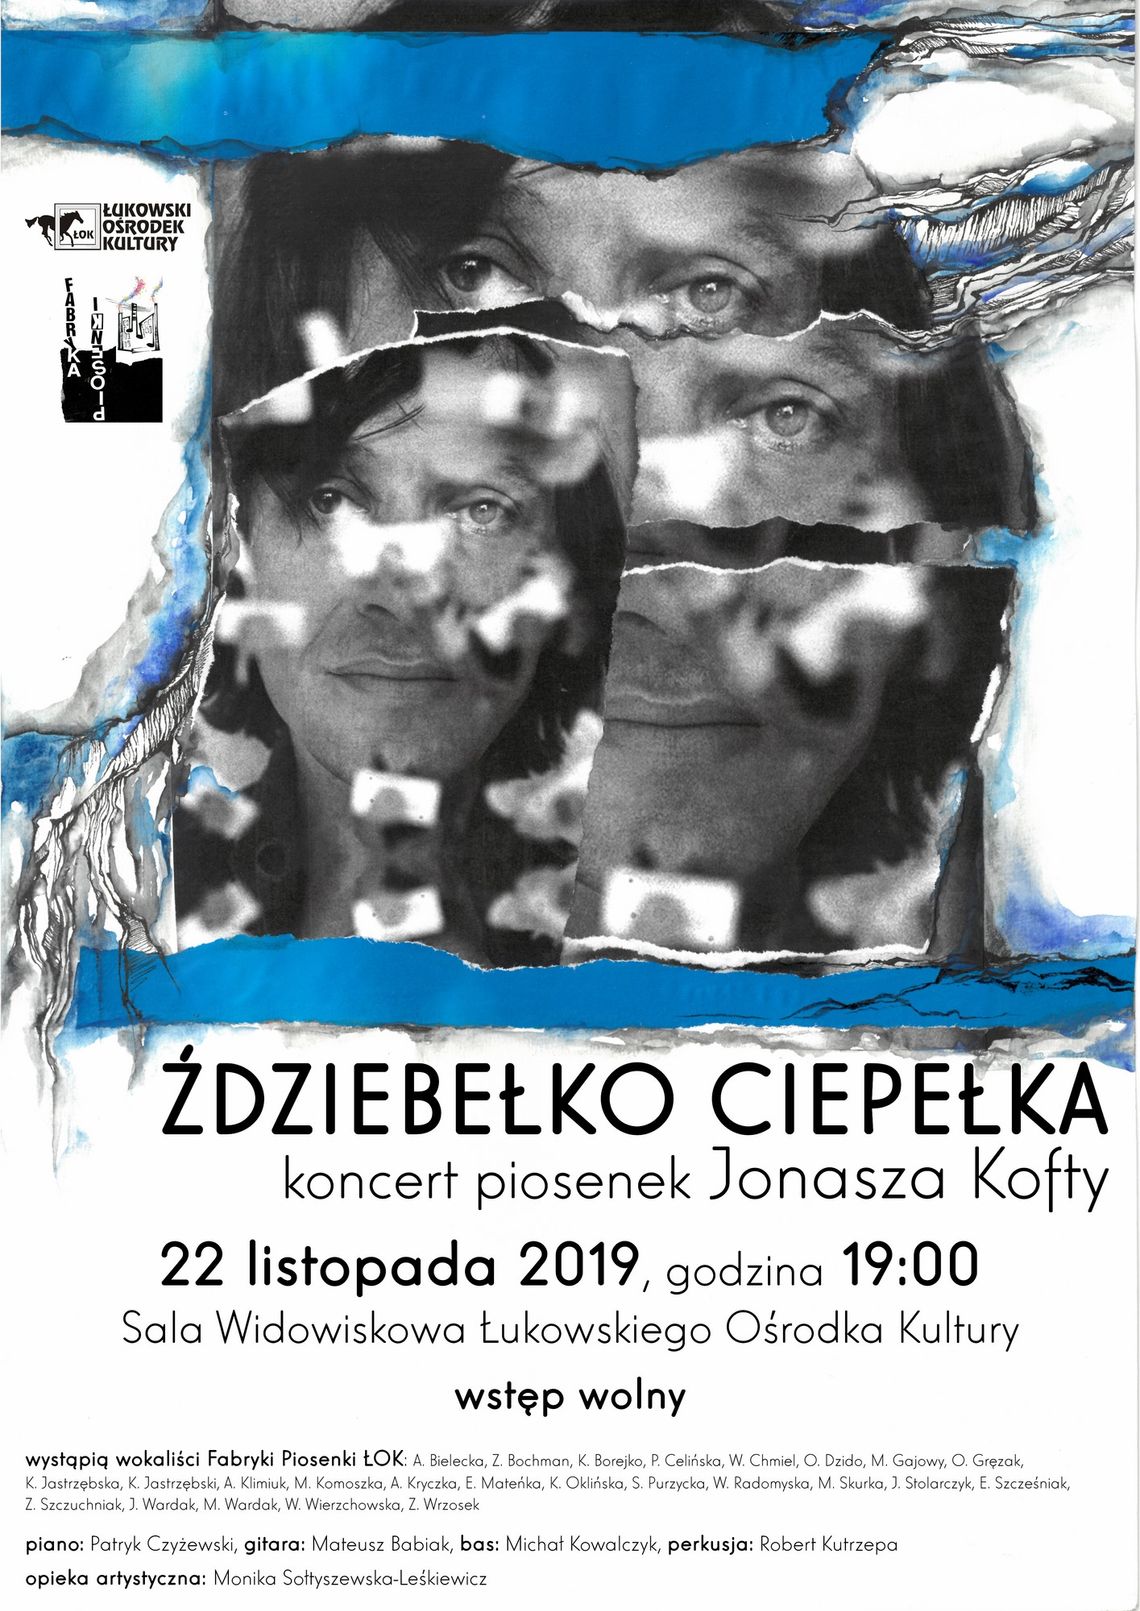 Koncert Fabryki Piosenki ŁOK "Ździebełko ciepełka" /22 listopada 2019